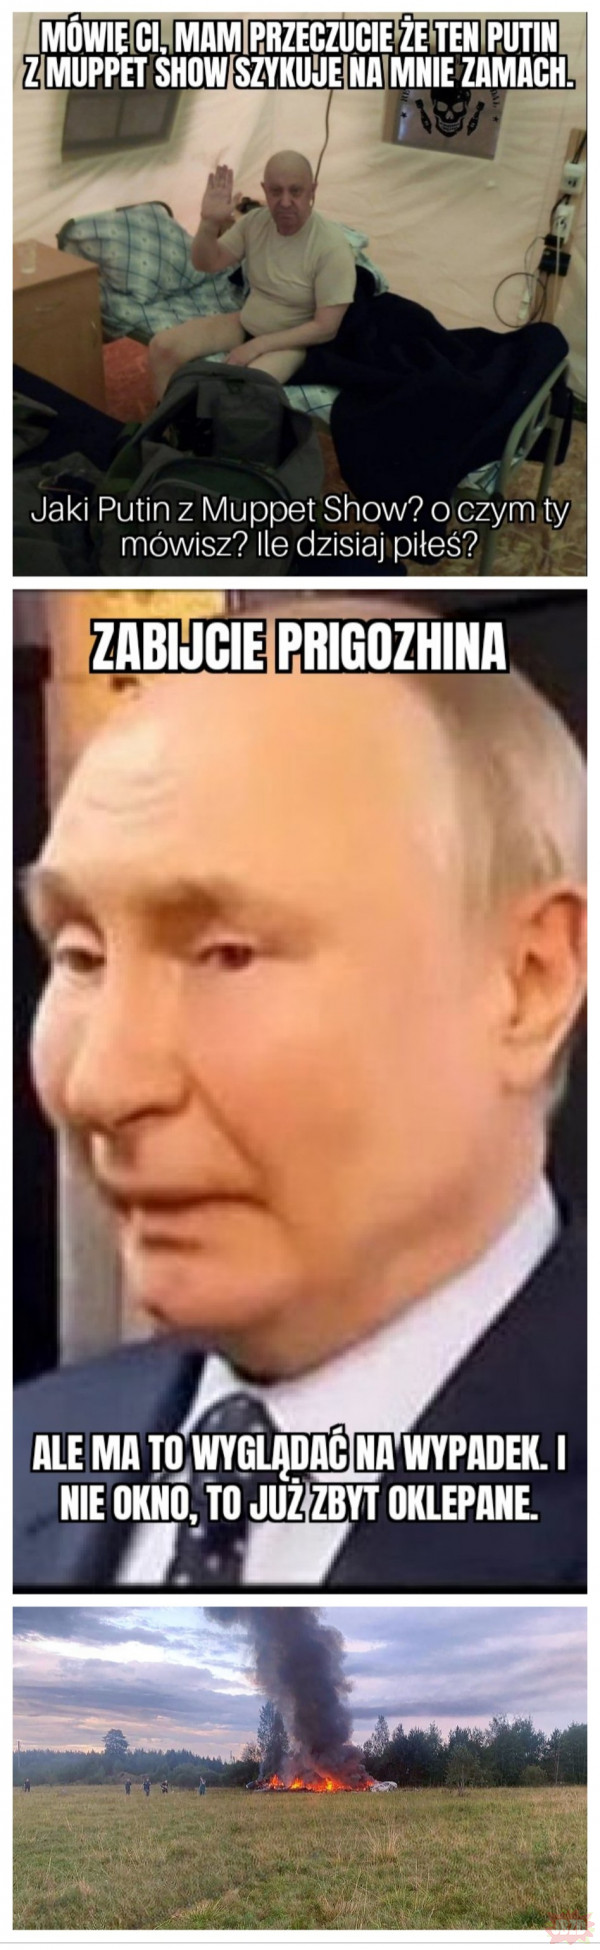 Putin z Muppet Show nie istnieje i nie może cię skrzywdzić